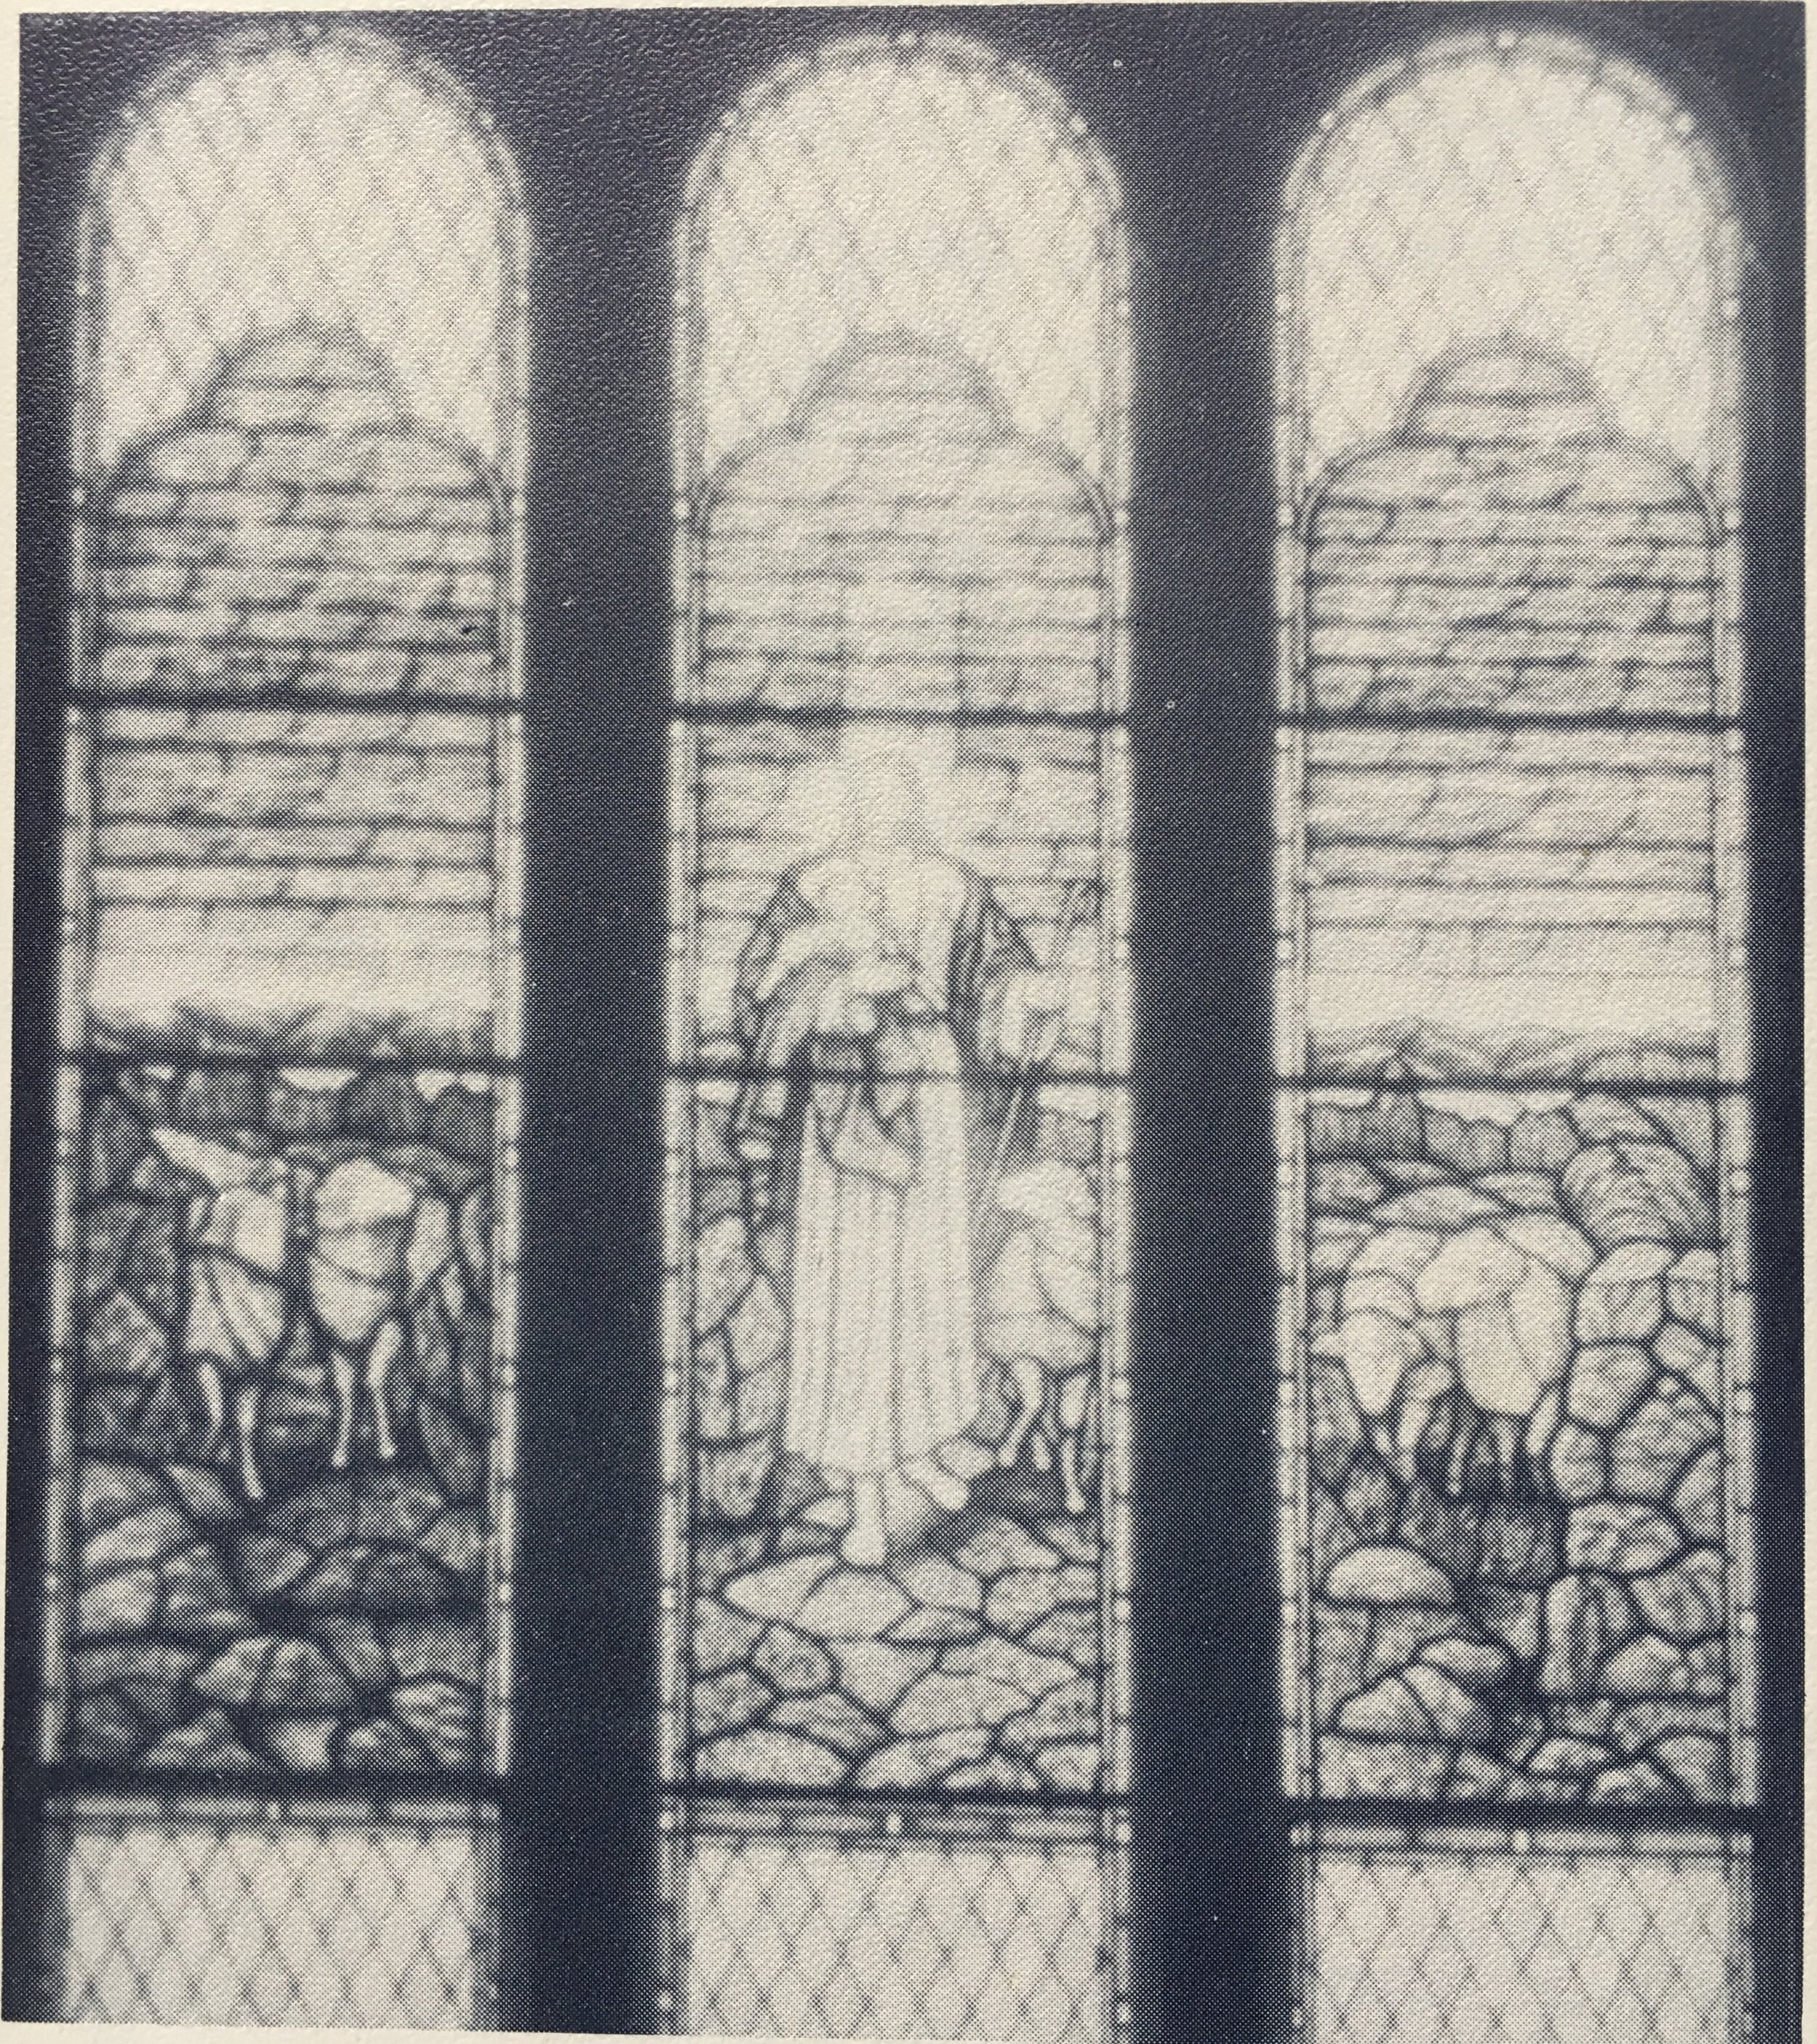 stained glass shepherd b&w.jpeg